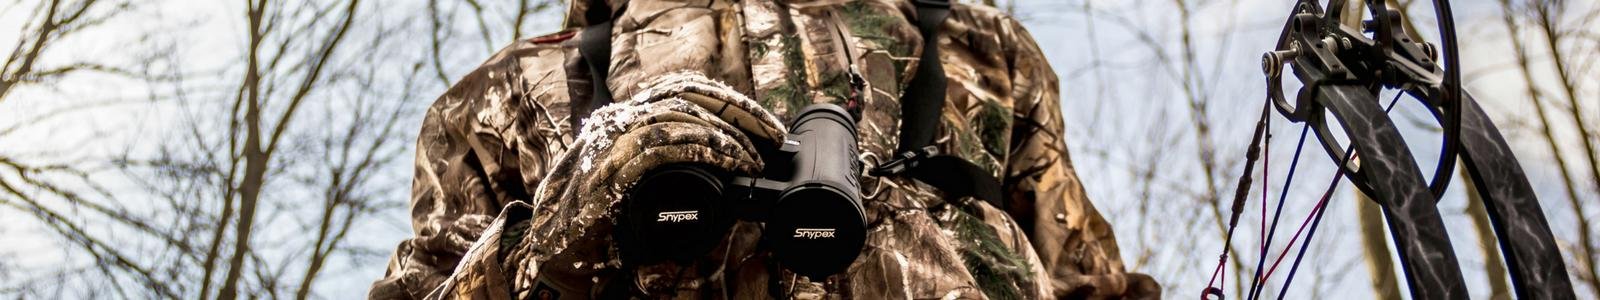 Best Rangefinder Binoculars - Outeroptics